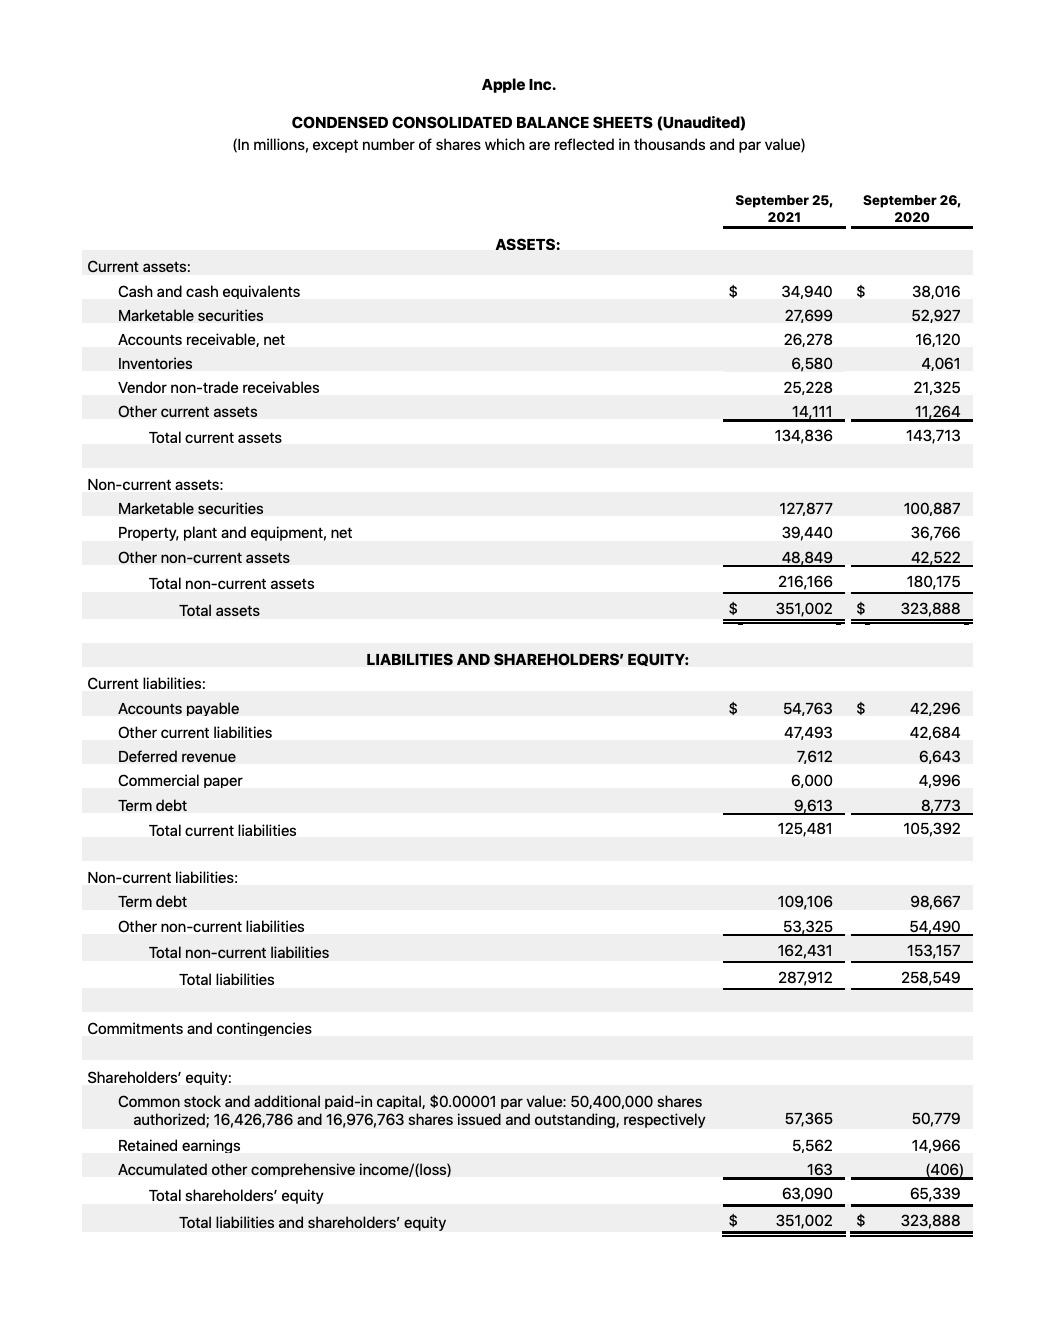 Apple Reports Q4 FY21 Earnings: $83.4 Billion in Revenue, $20.6 Billion in Net Income [Chart]